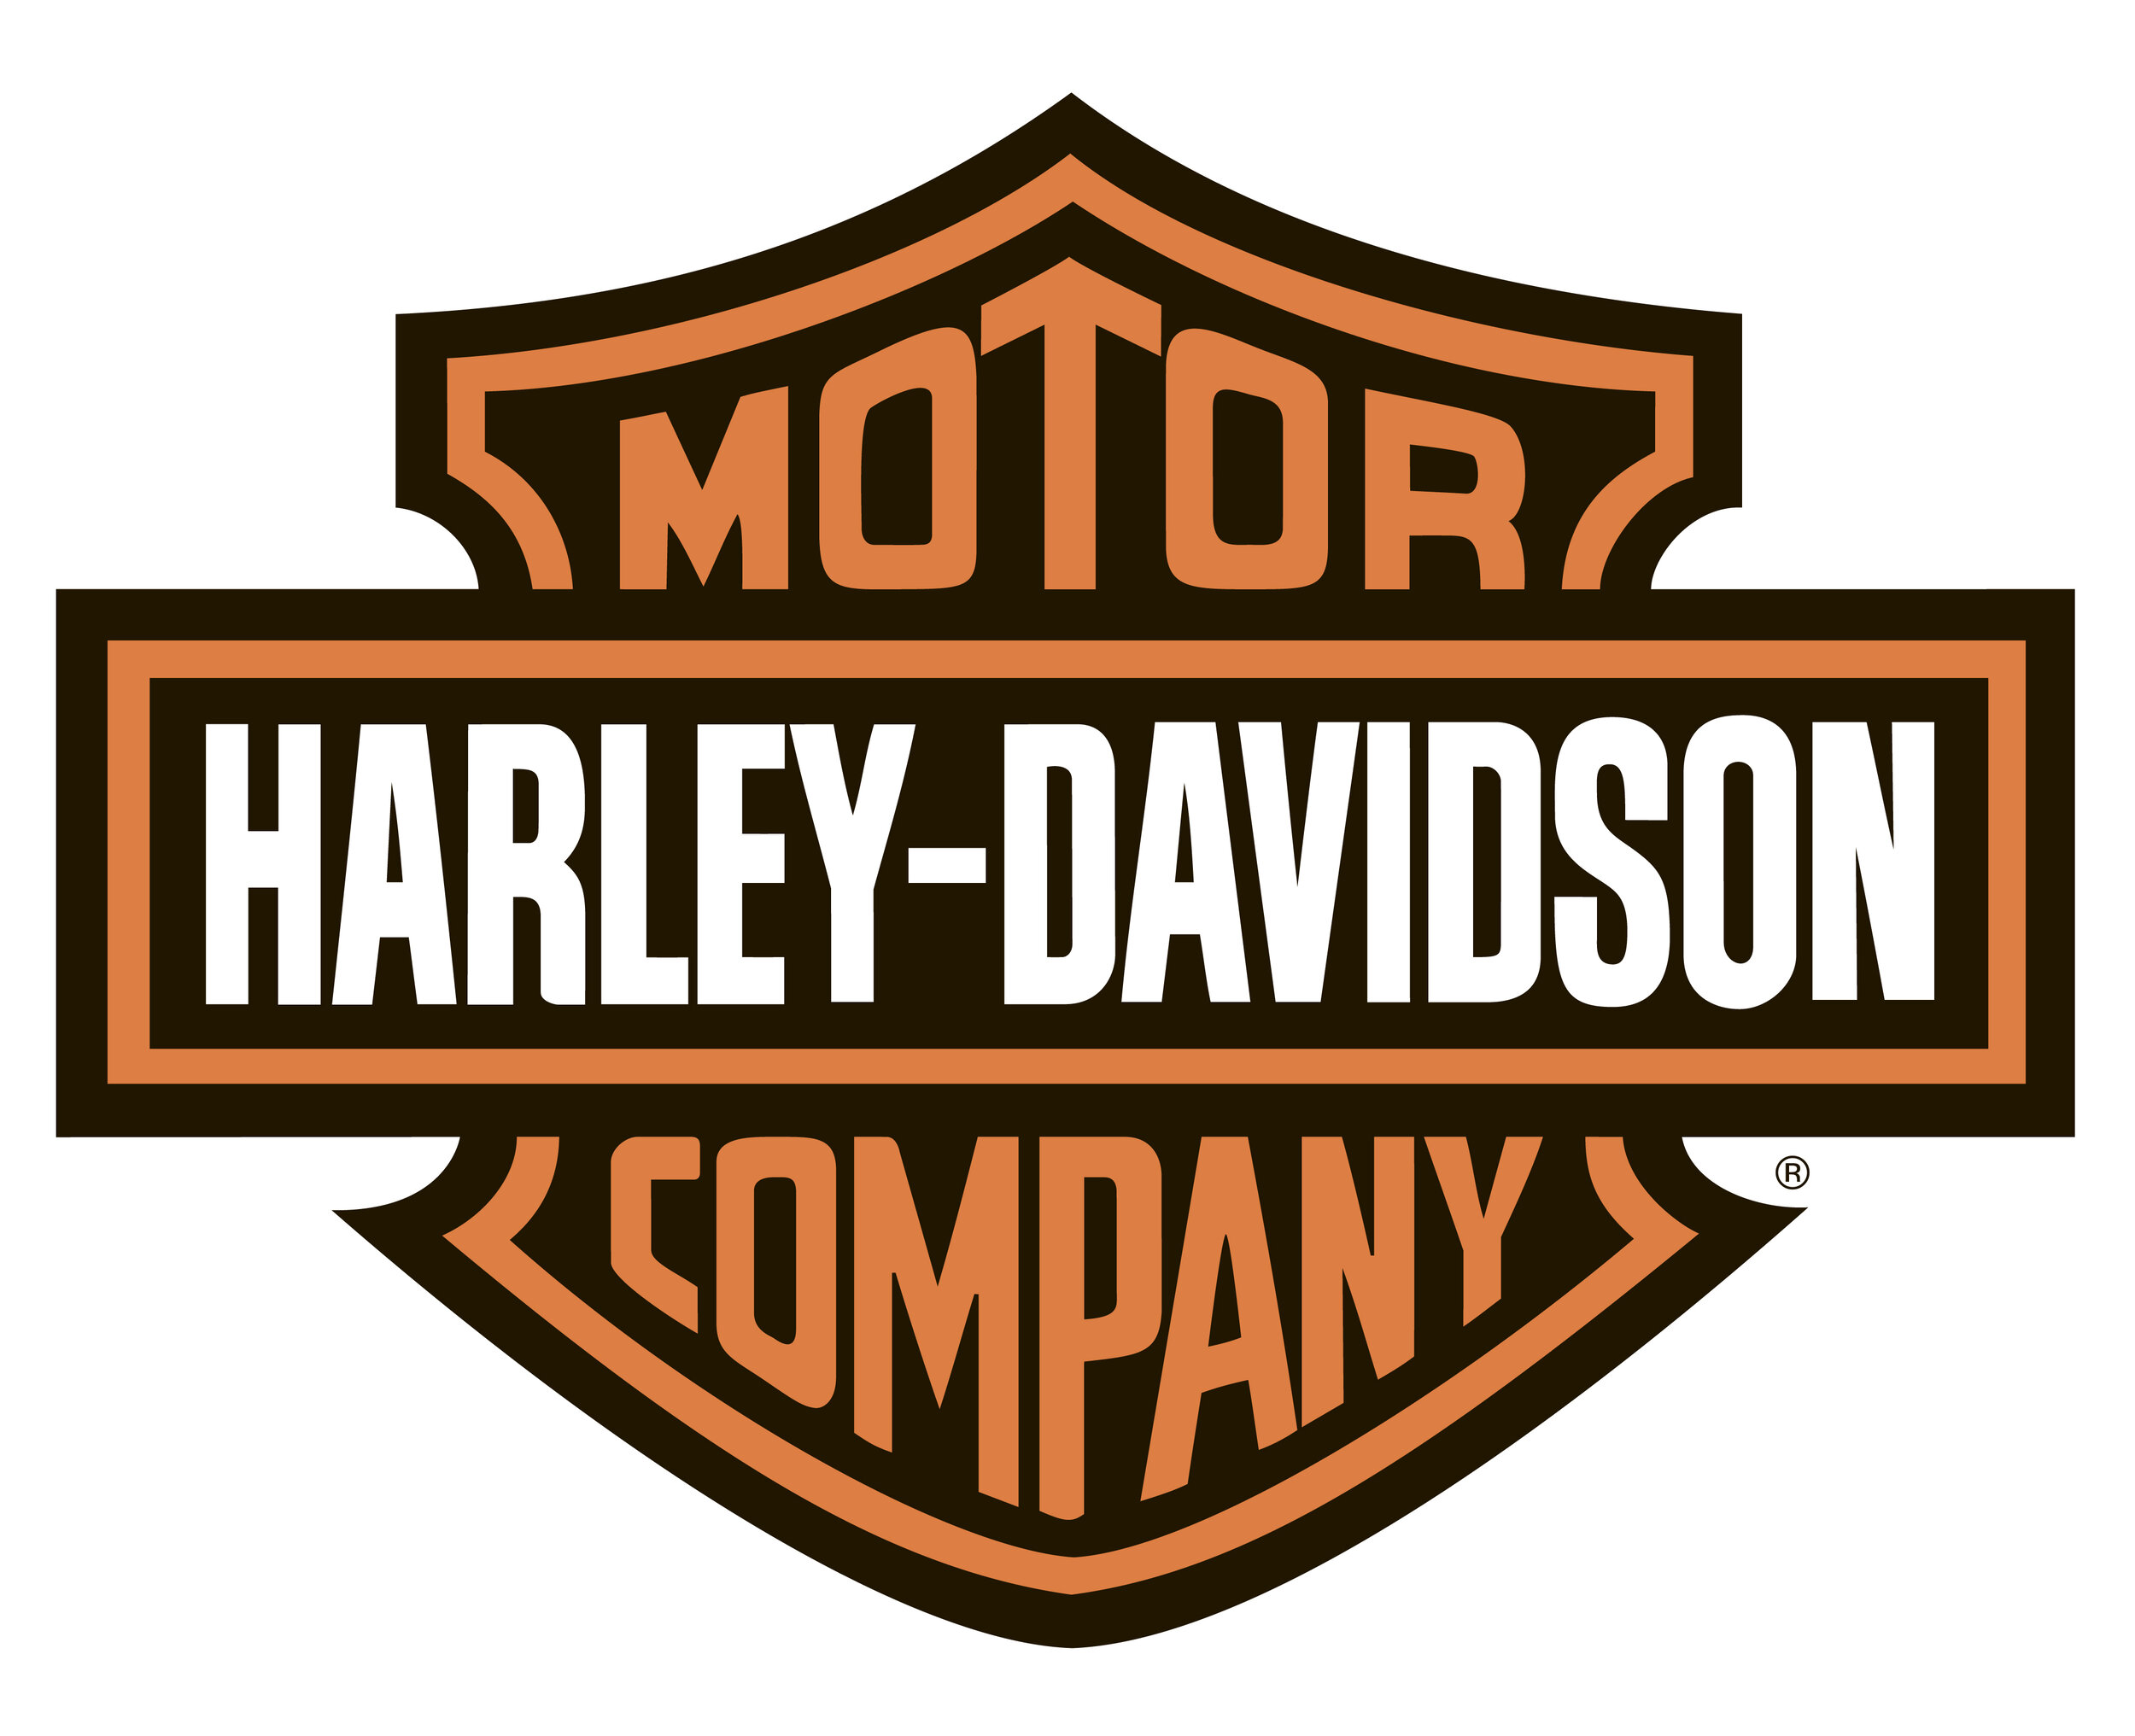 harley-davidson-logo.jpg